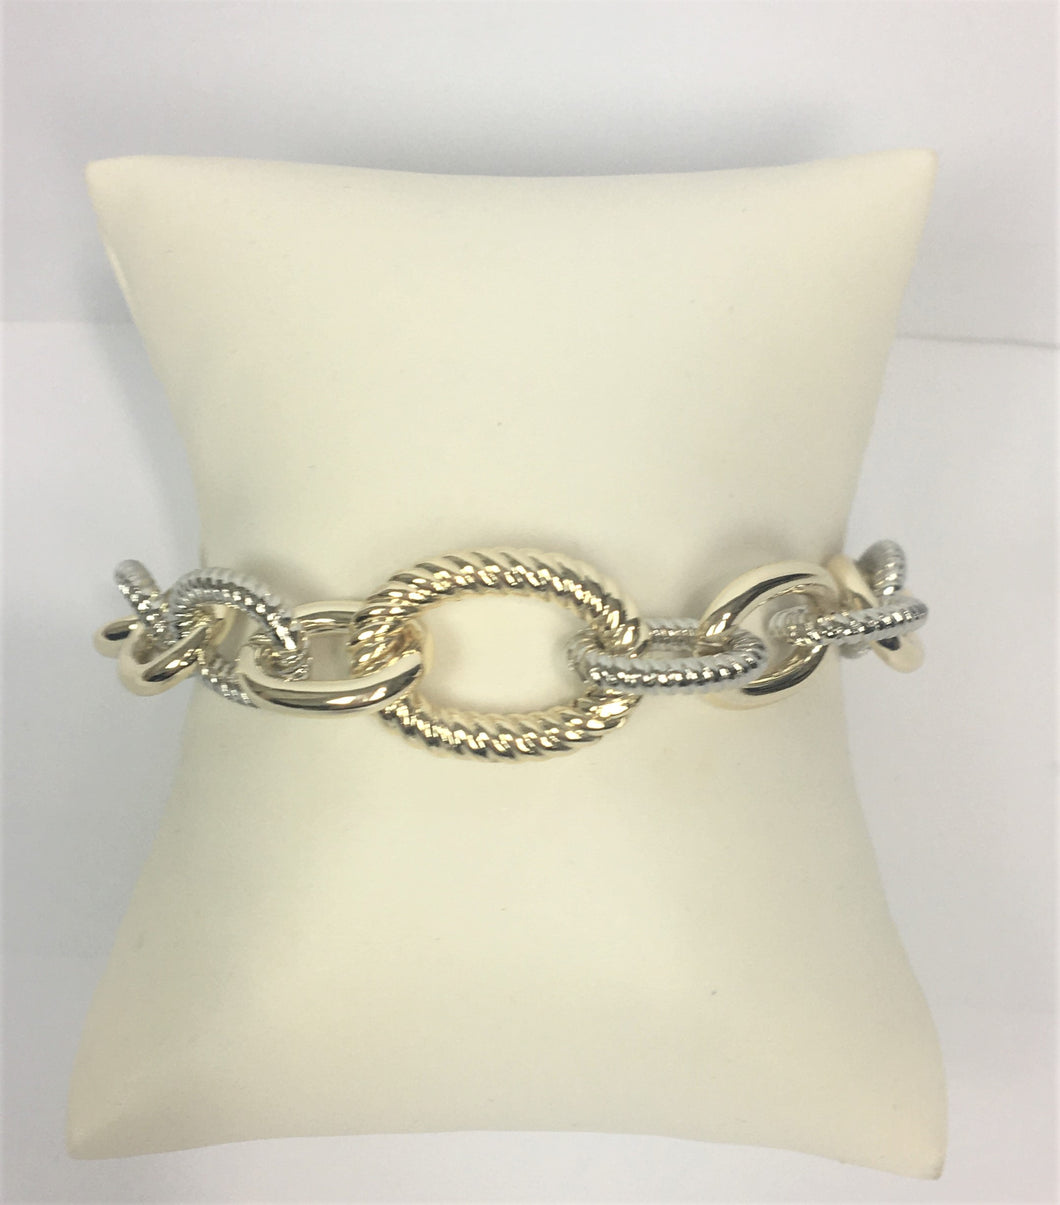 Yurman Inspired Two-Tone Link Bracelet